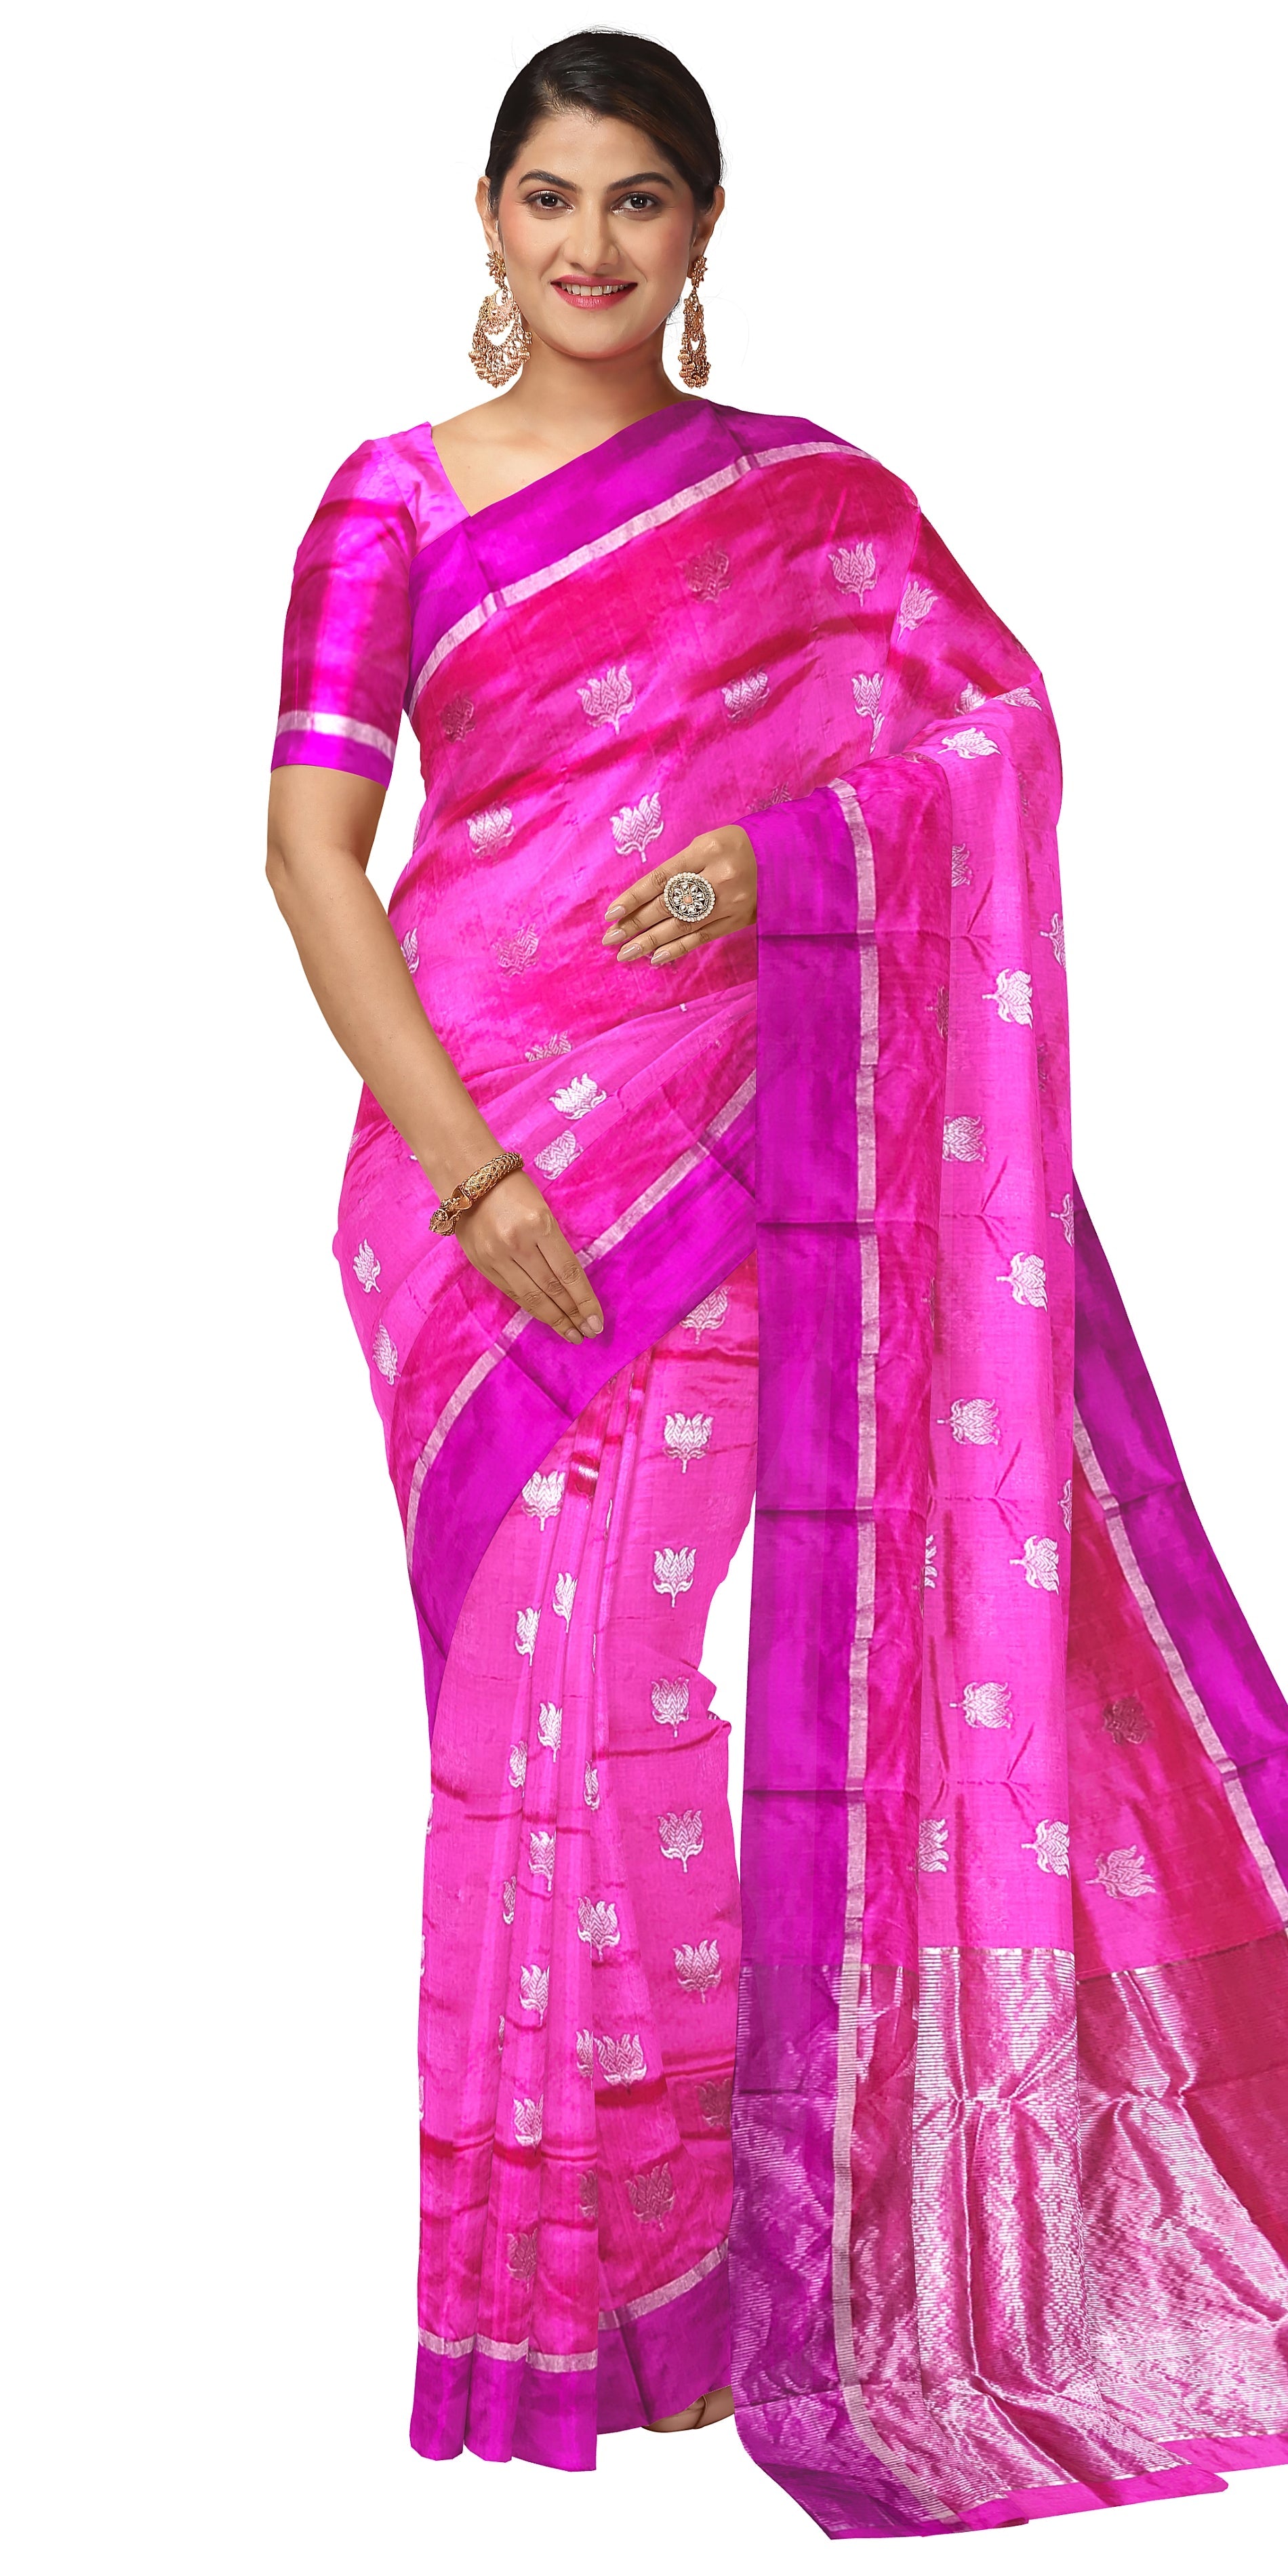 Sarang Kaur Chanderi Silk Embroidered Saree | Pink, Floral Motifs, Chanderi  Silk | Saree, Aza fashion, Fashion